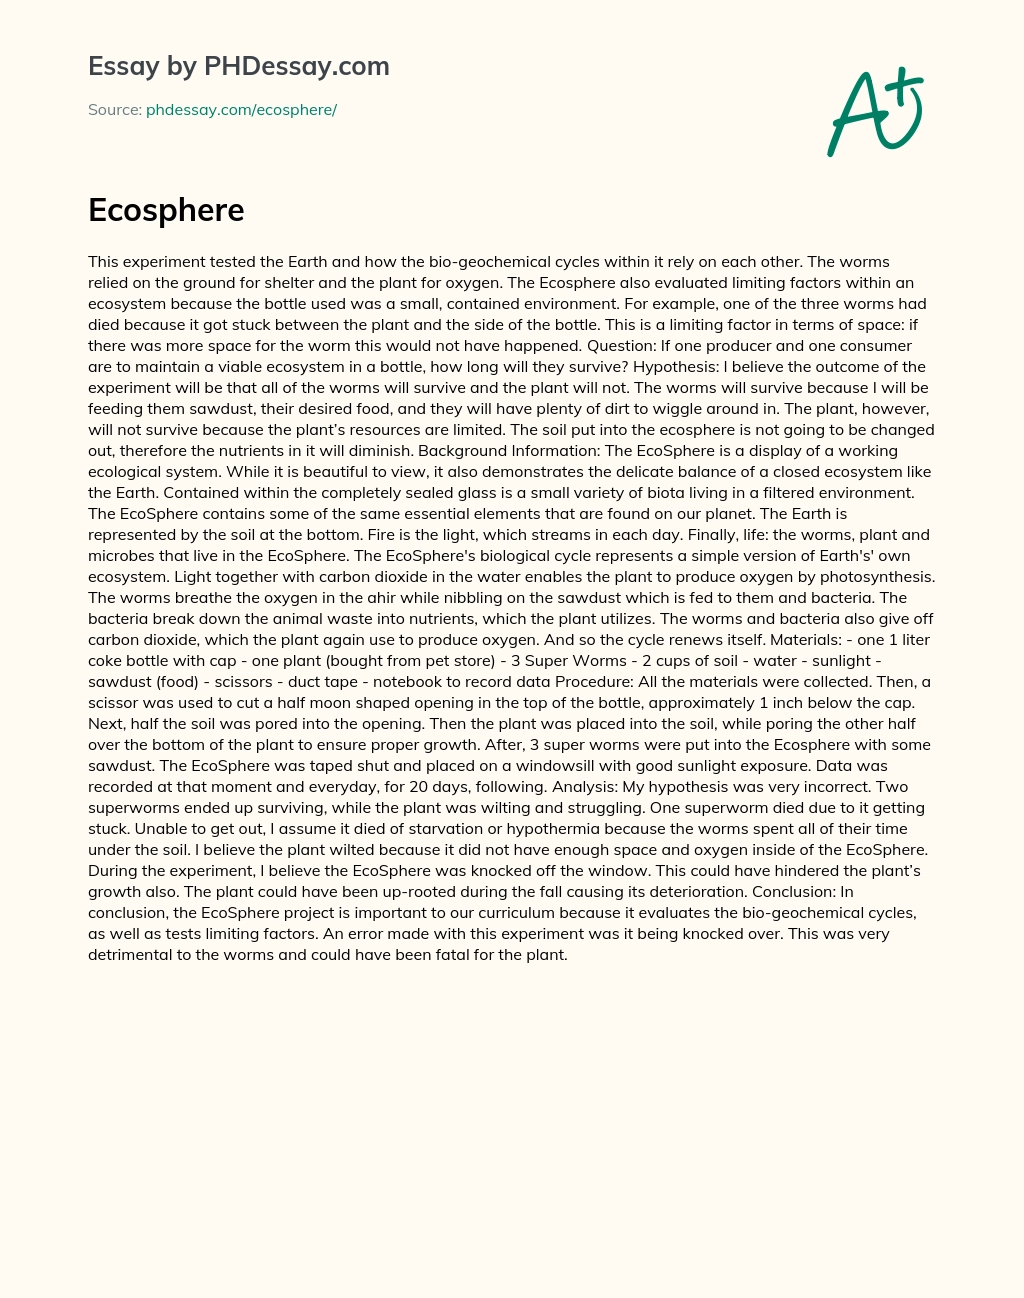 Ecosphere essay